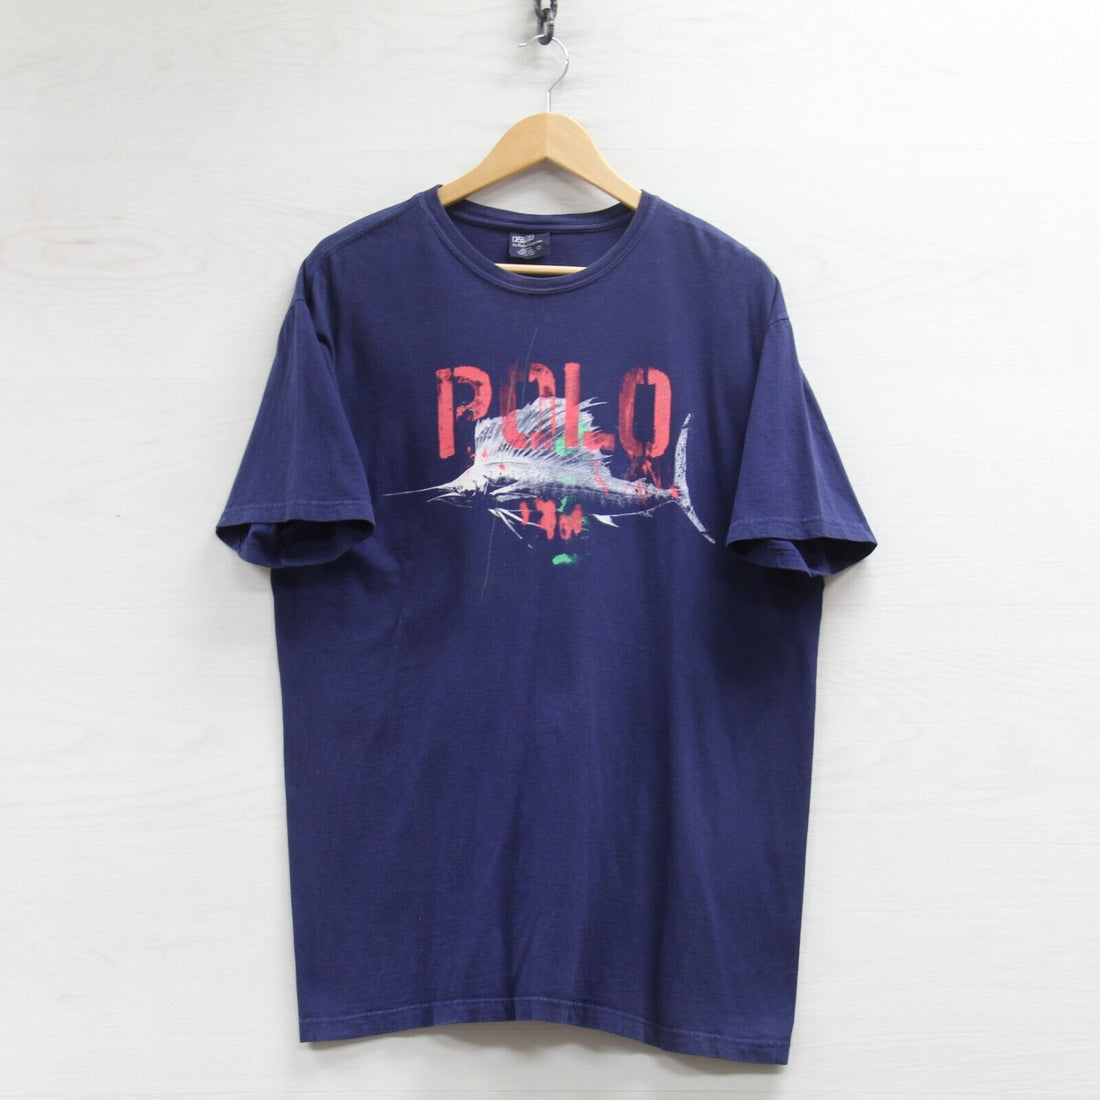 Vintage Polo Ralph Lauren Swordfish T-Shirt Size Large Navy Blue